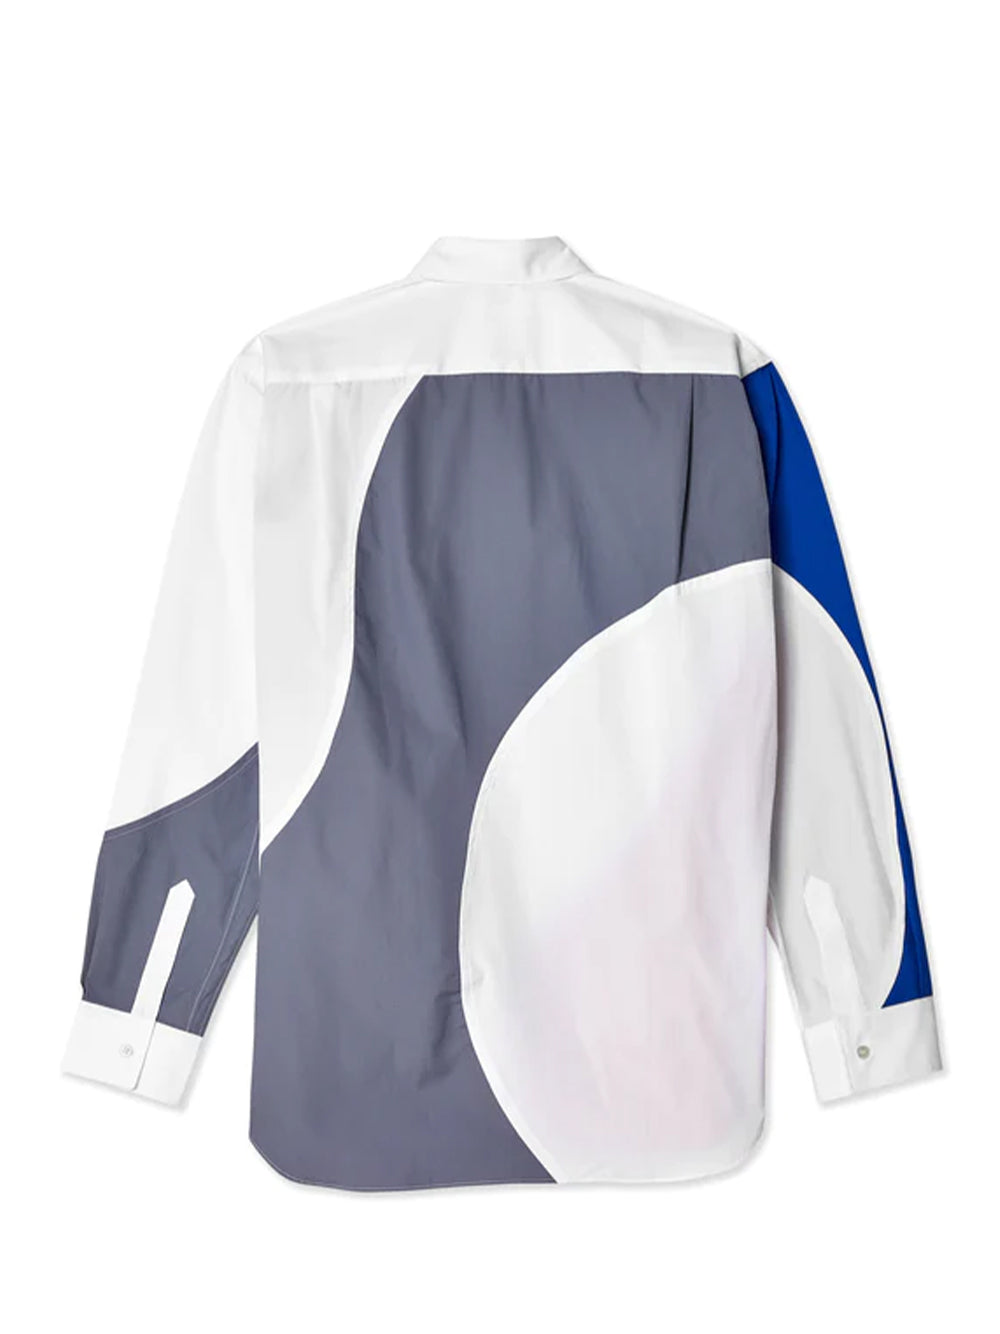 Andy Warhol Men's Cotton Stripe Shirt (Print N-2)